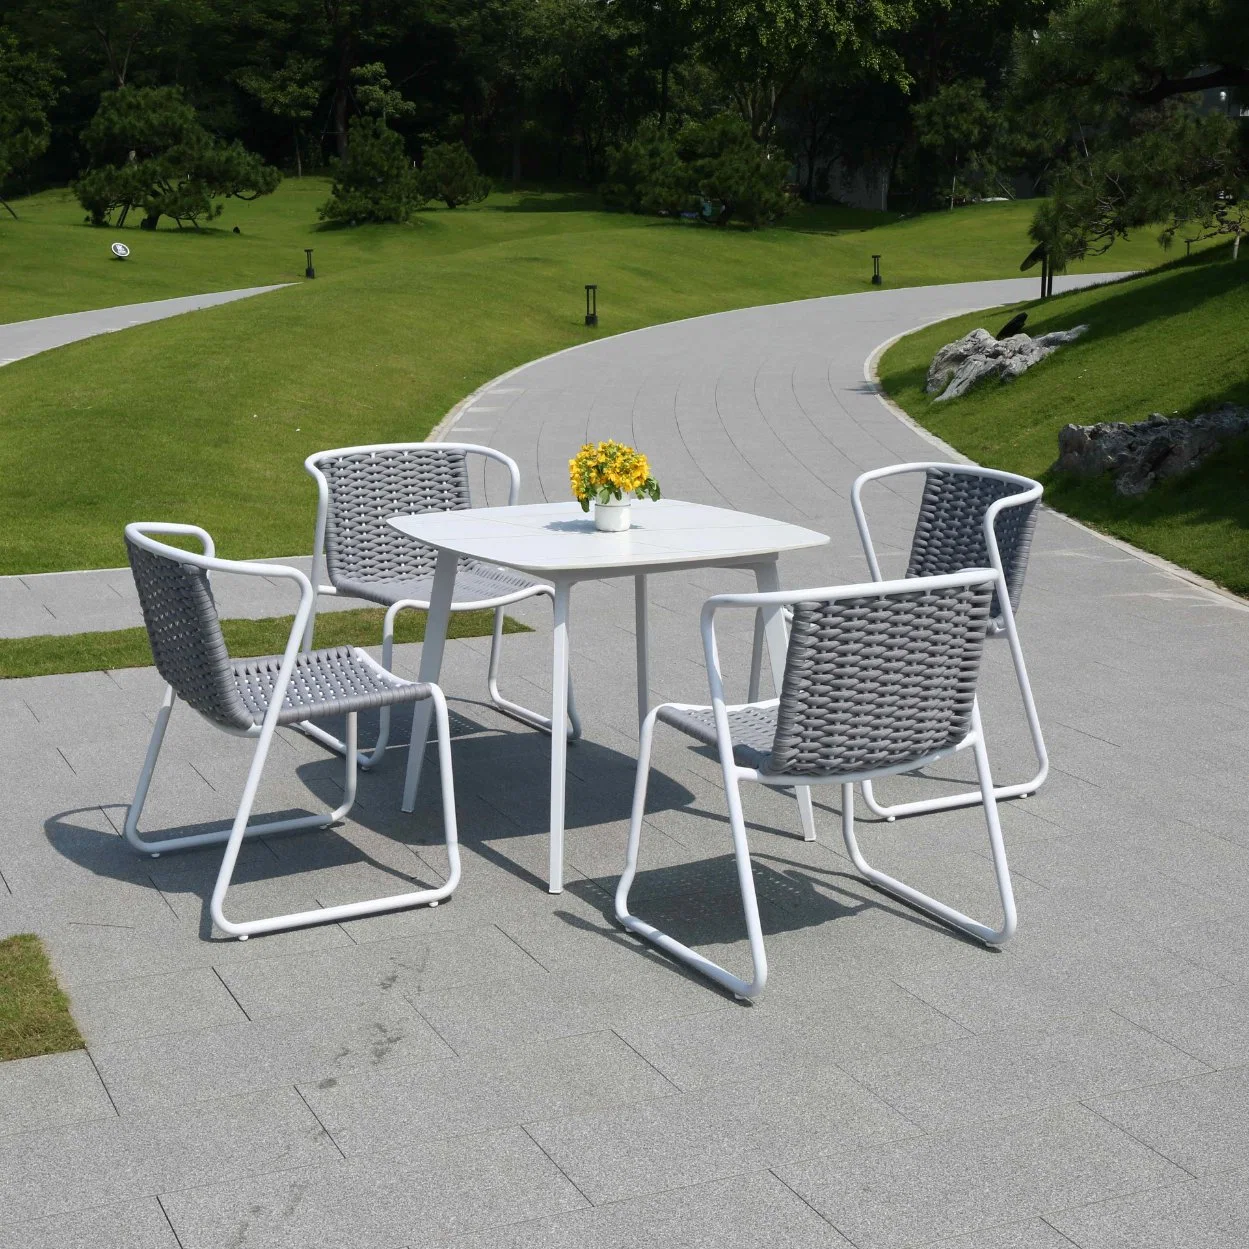 4 cadeiras e 1 Mesa alumínio moldura Outdoor Garden Patio Mesa lateral de piscina e cadeira